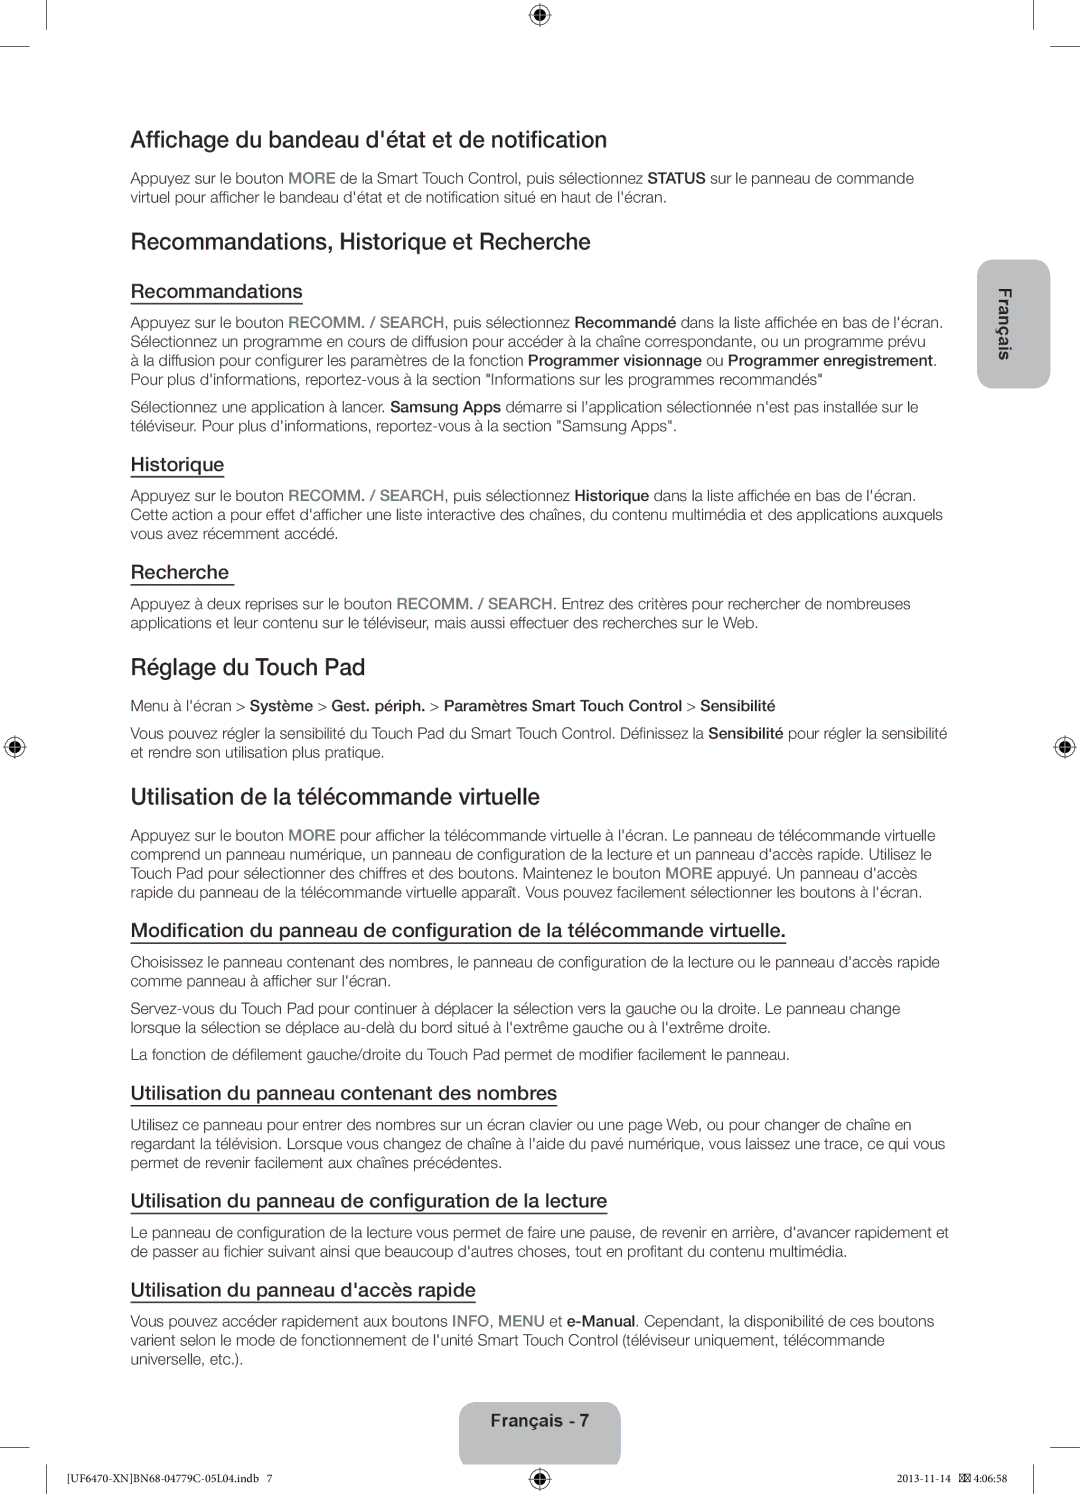 Samsung UE46F6640SSXZF manual Affichage du bandeau détat et de notification, Recommandations, Historique et Recherche 